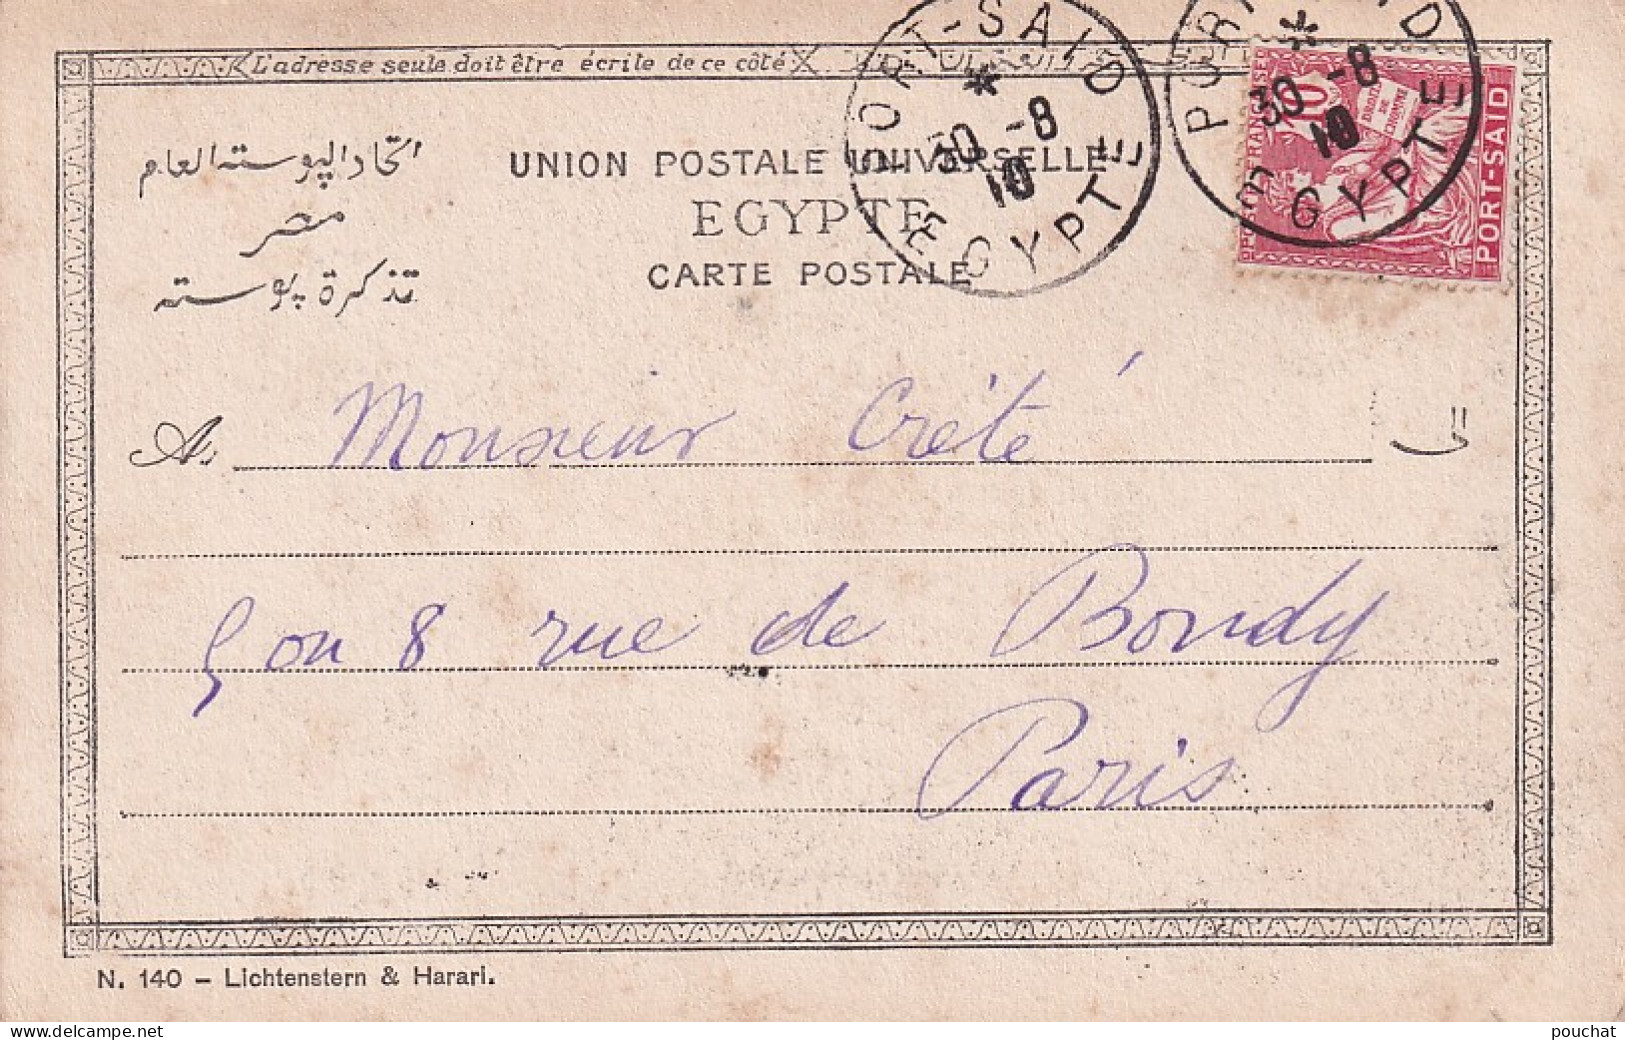 FI 30- ARABIC PRAYERS - PRIERES ARABE DEVANT LA MOSQUEE - OBLITERATION PORT SAID 1910 - Personen